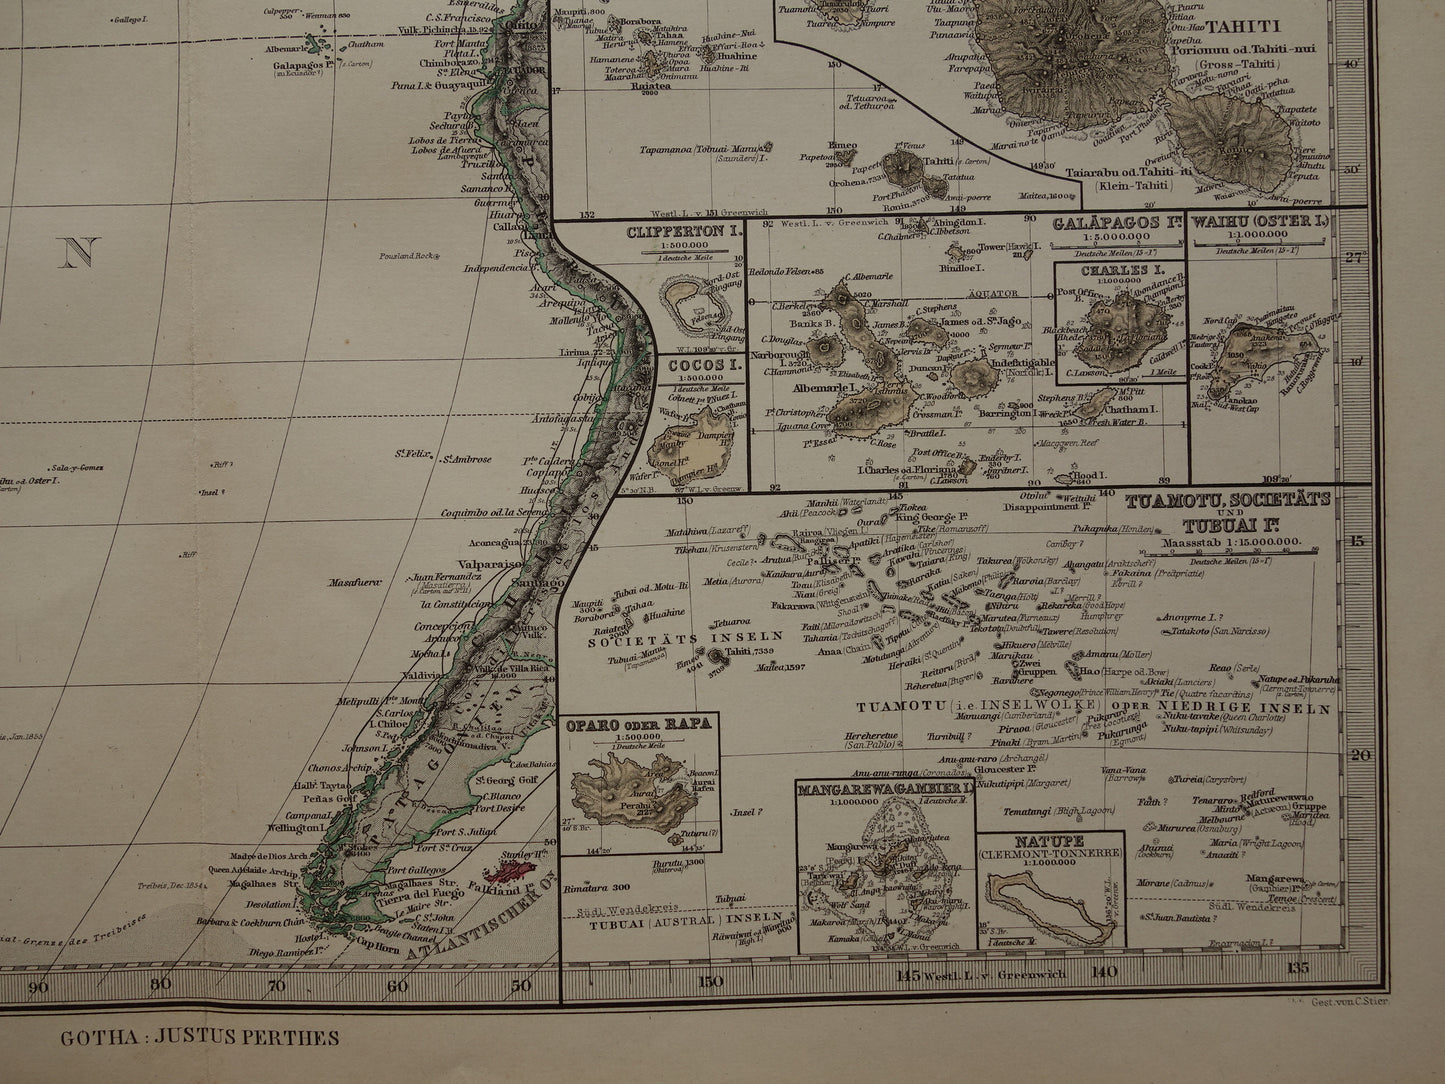 Oude kaart van de Grote Oceaan in 1885 originele antieke landkaart Australië Polynesië Indonesië Azië vintage print Stille Oceaan Pacific